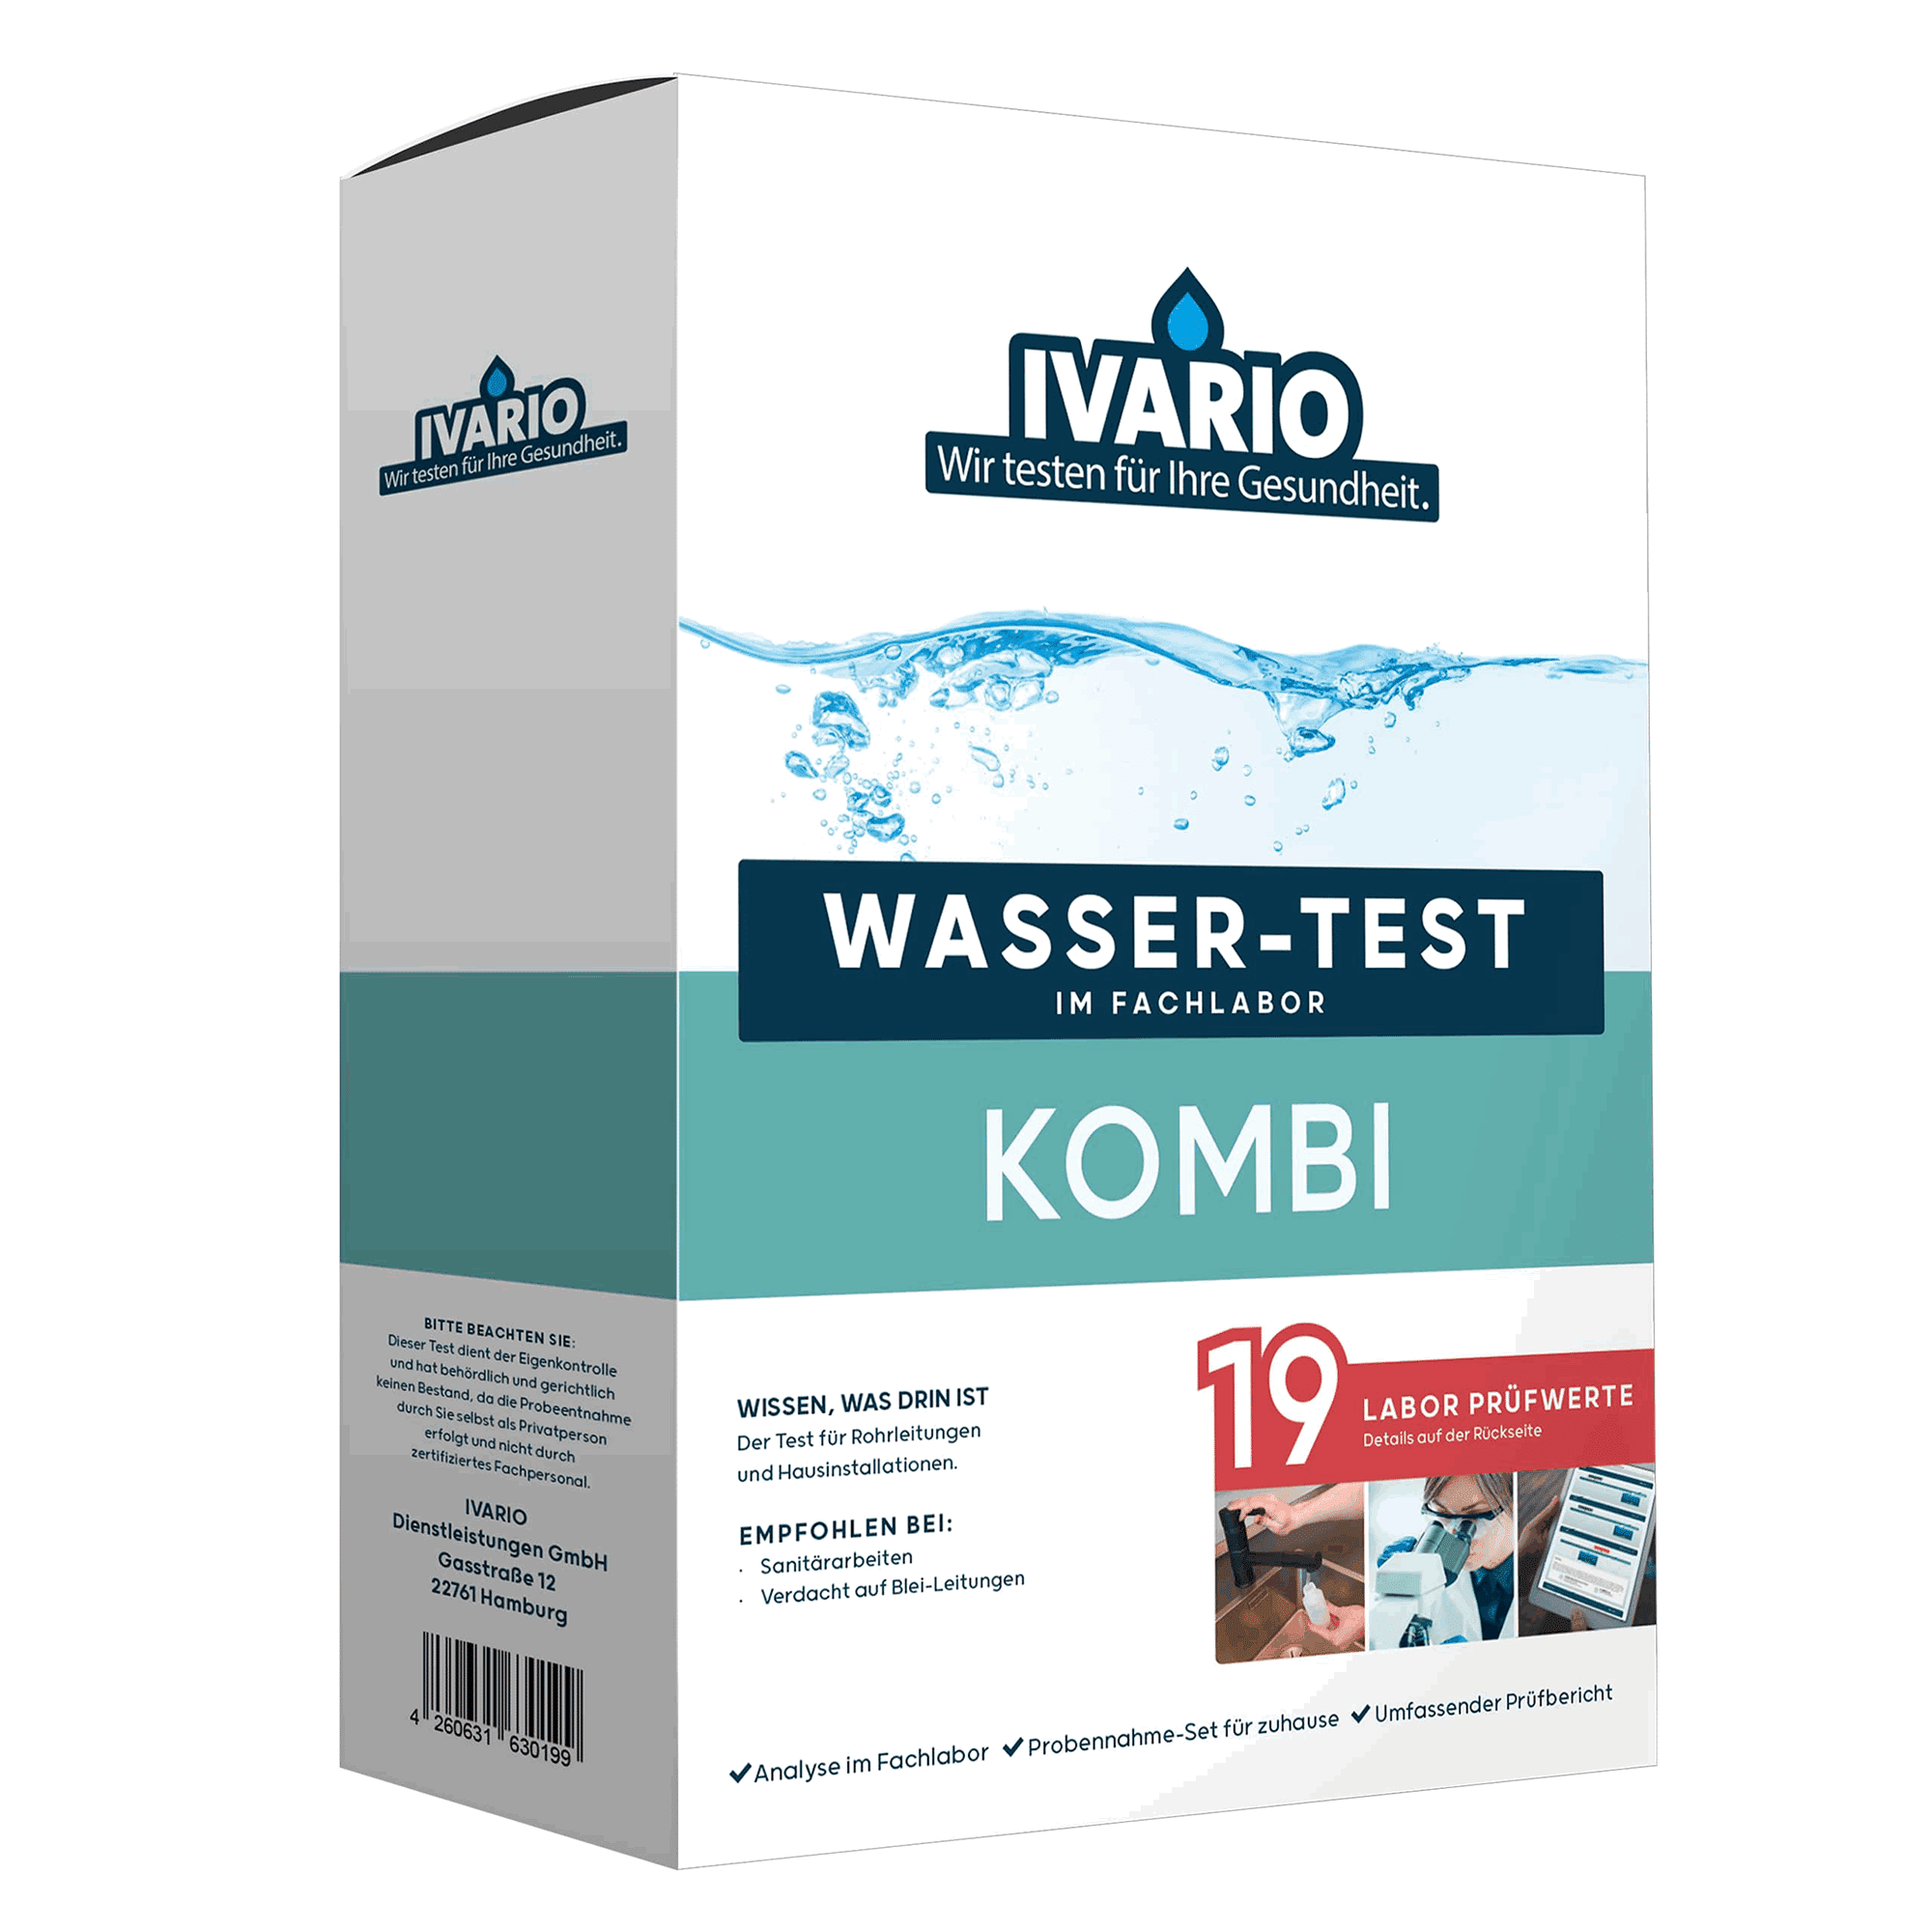 Wassertest 'Kombi' 19 Prüfwerte + product picture